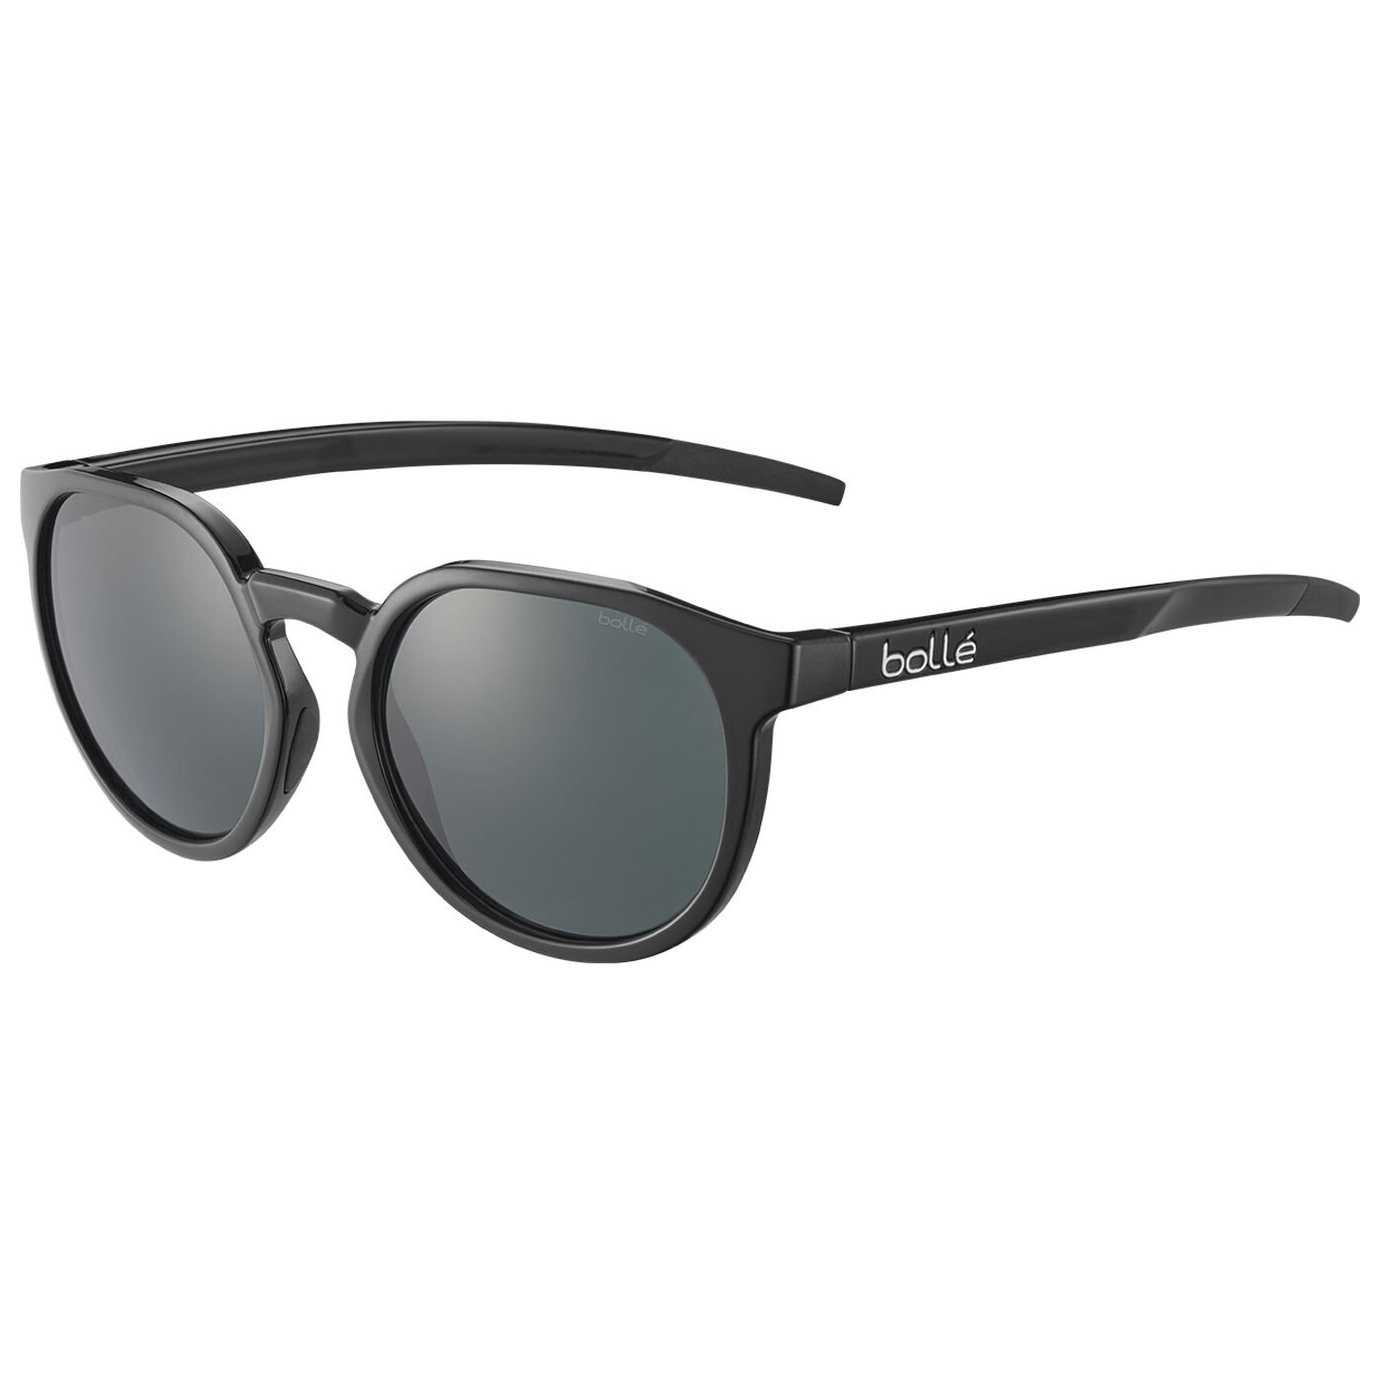 Солнцезащитные очки Bollé Merit S3 (VLT 11%), цвет Black Shiny кофейник gipfel merit 8573